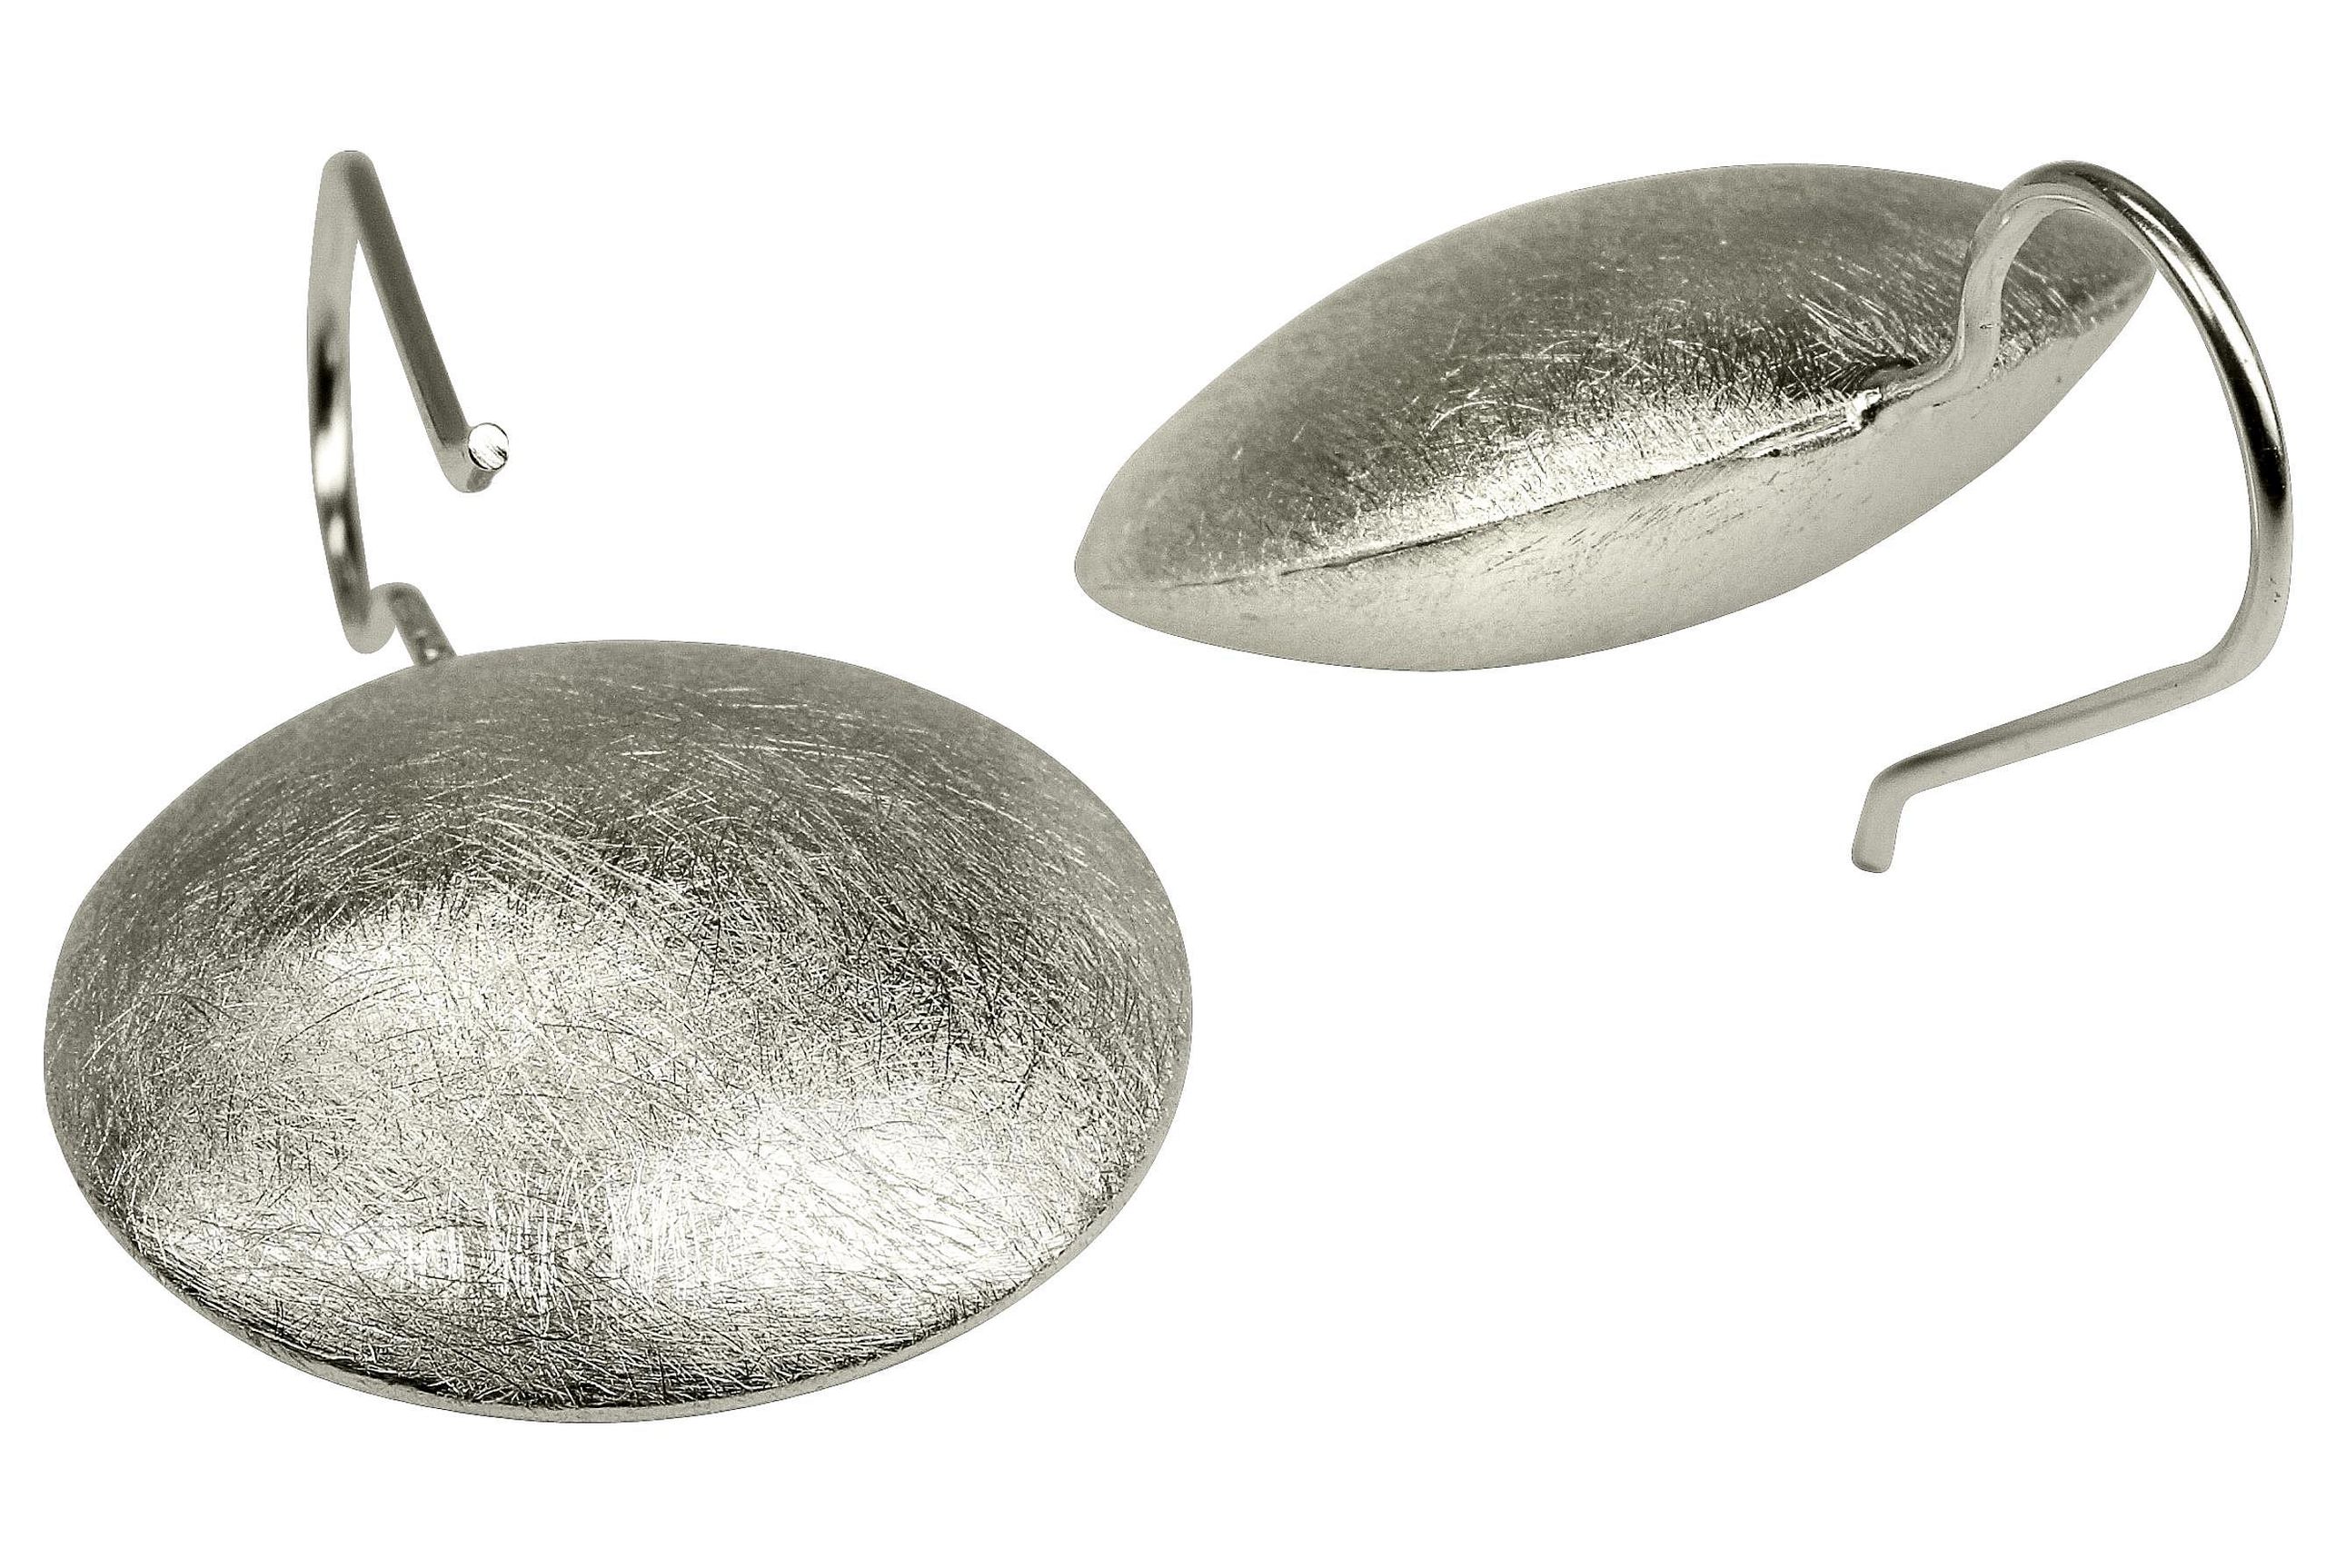 Große runde Ohrhänger aus Silber für Damen in Form eines Knopfs, die eine mattierte Oberfläche aufweisen.